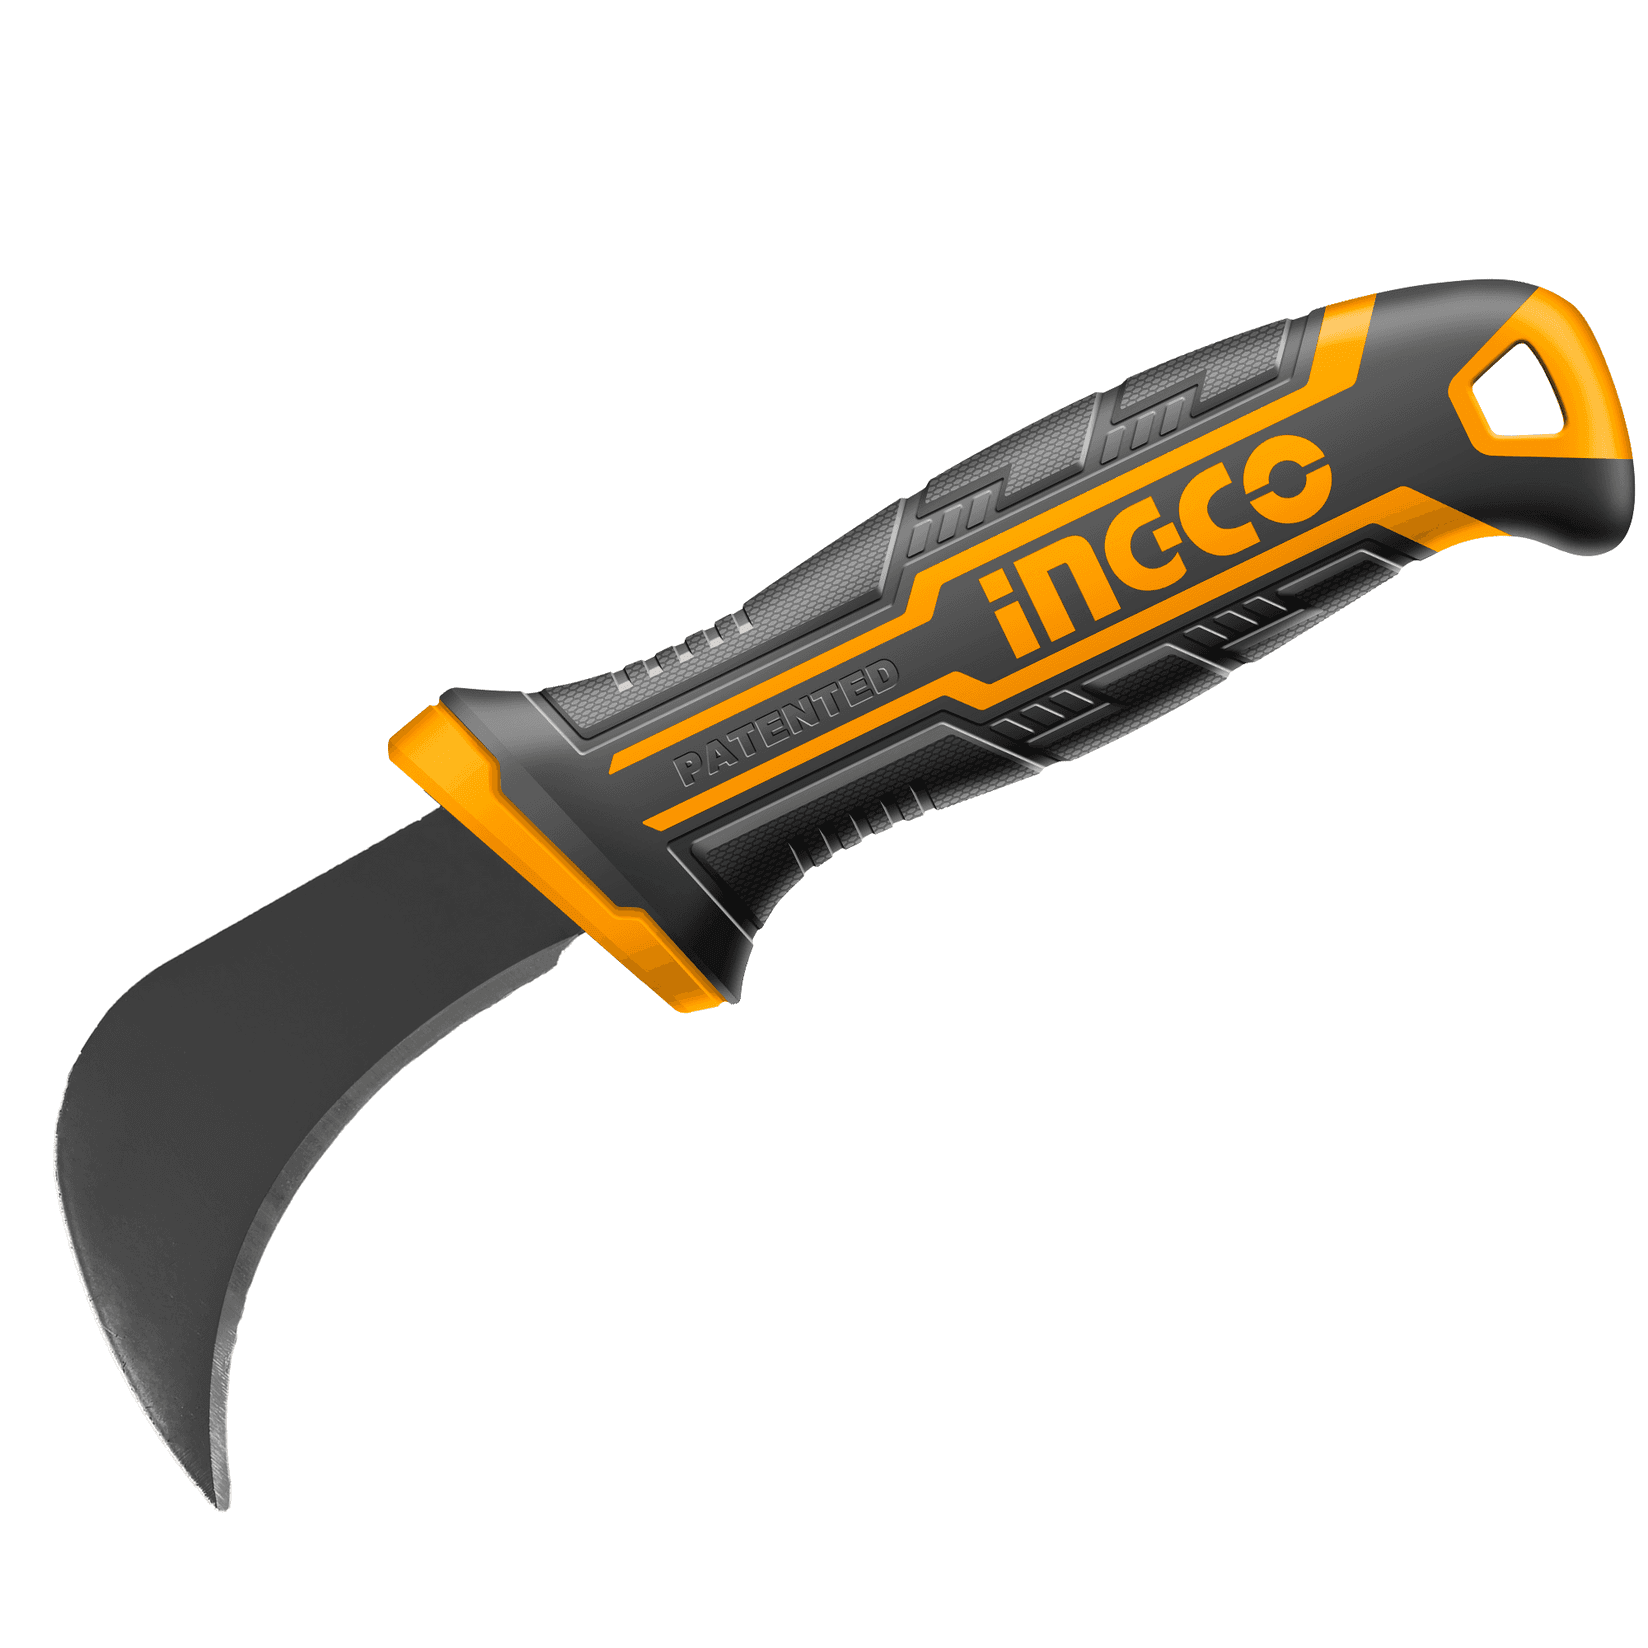 INGCO Nož sa zakrivljenim sečivom